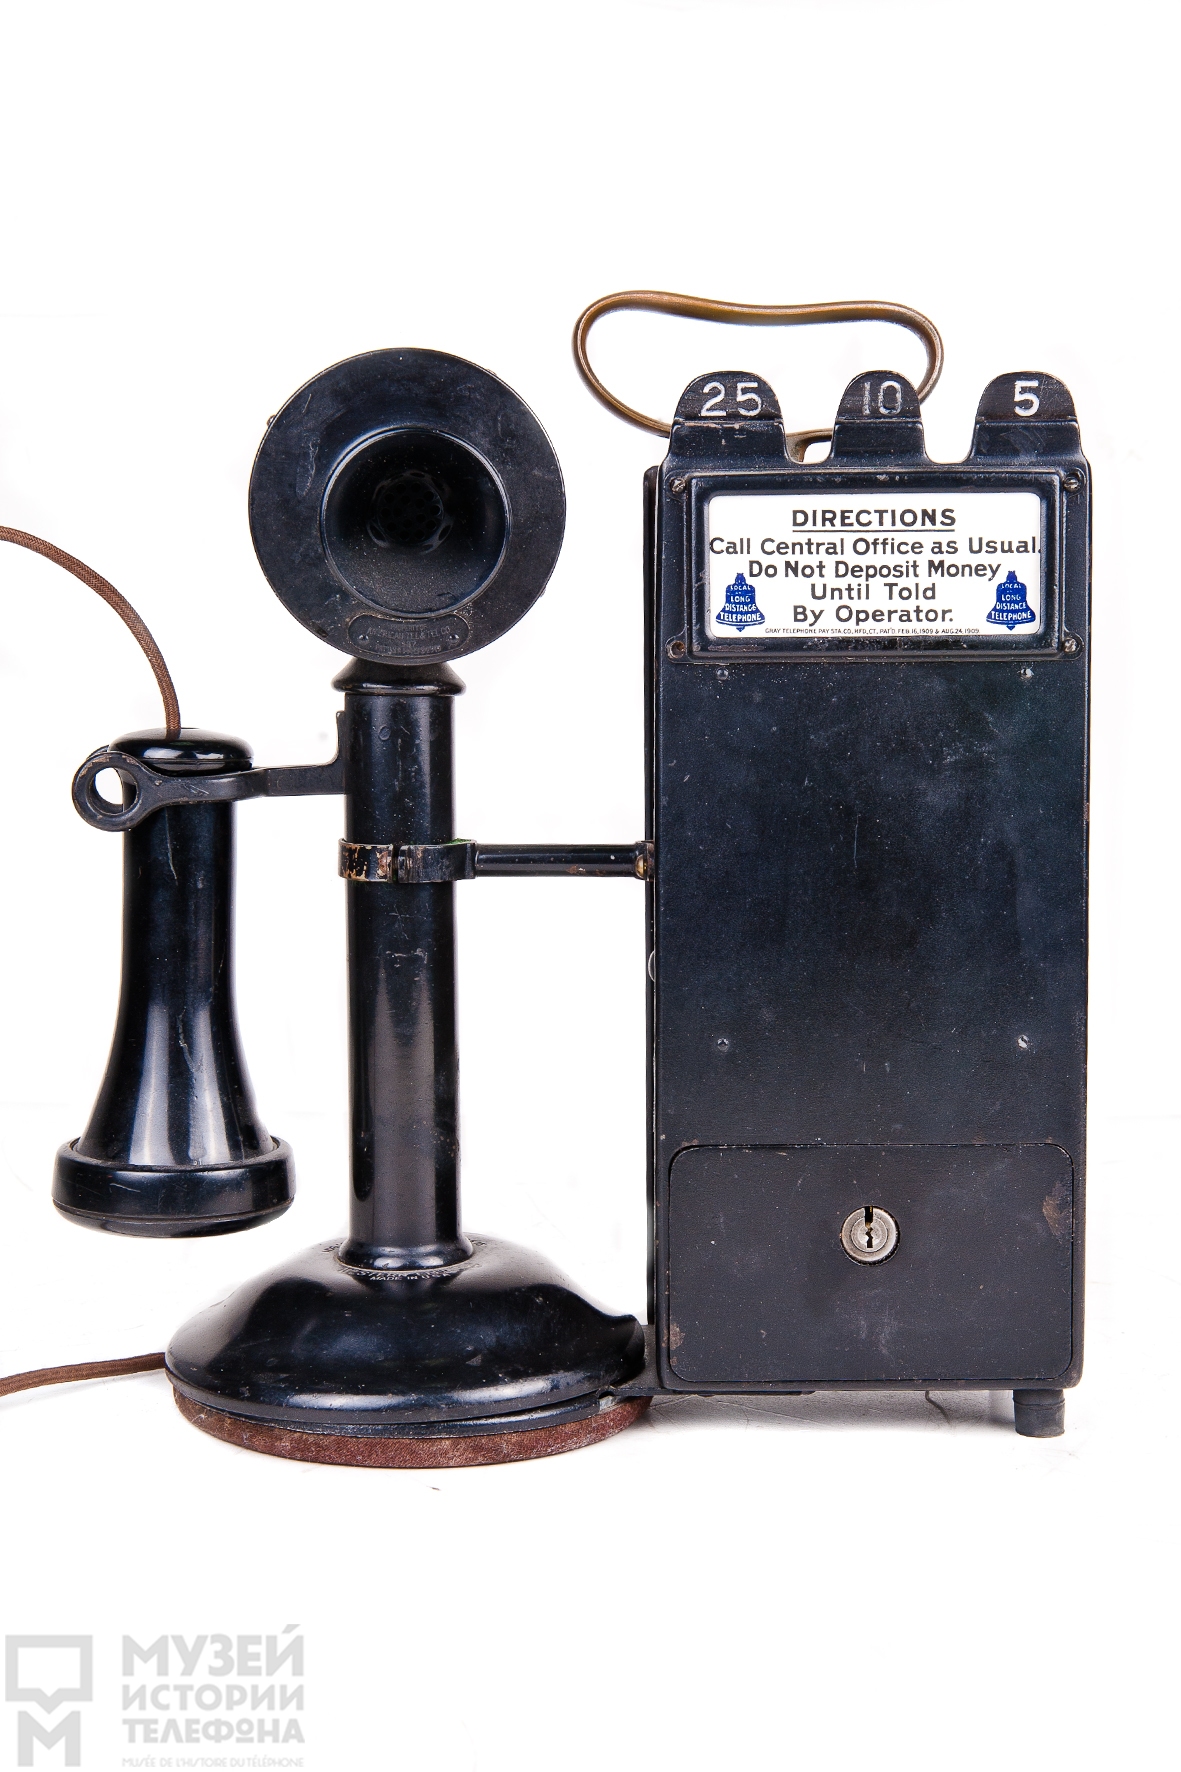 Настольный таксофон типа "подсвечник" с наушником в виде трубки Белла, микрофоном и ящиком-монетоприёмником на три вида монет - 25, 10 и 5 центов, модель "Gray telephone station"